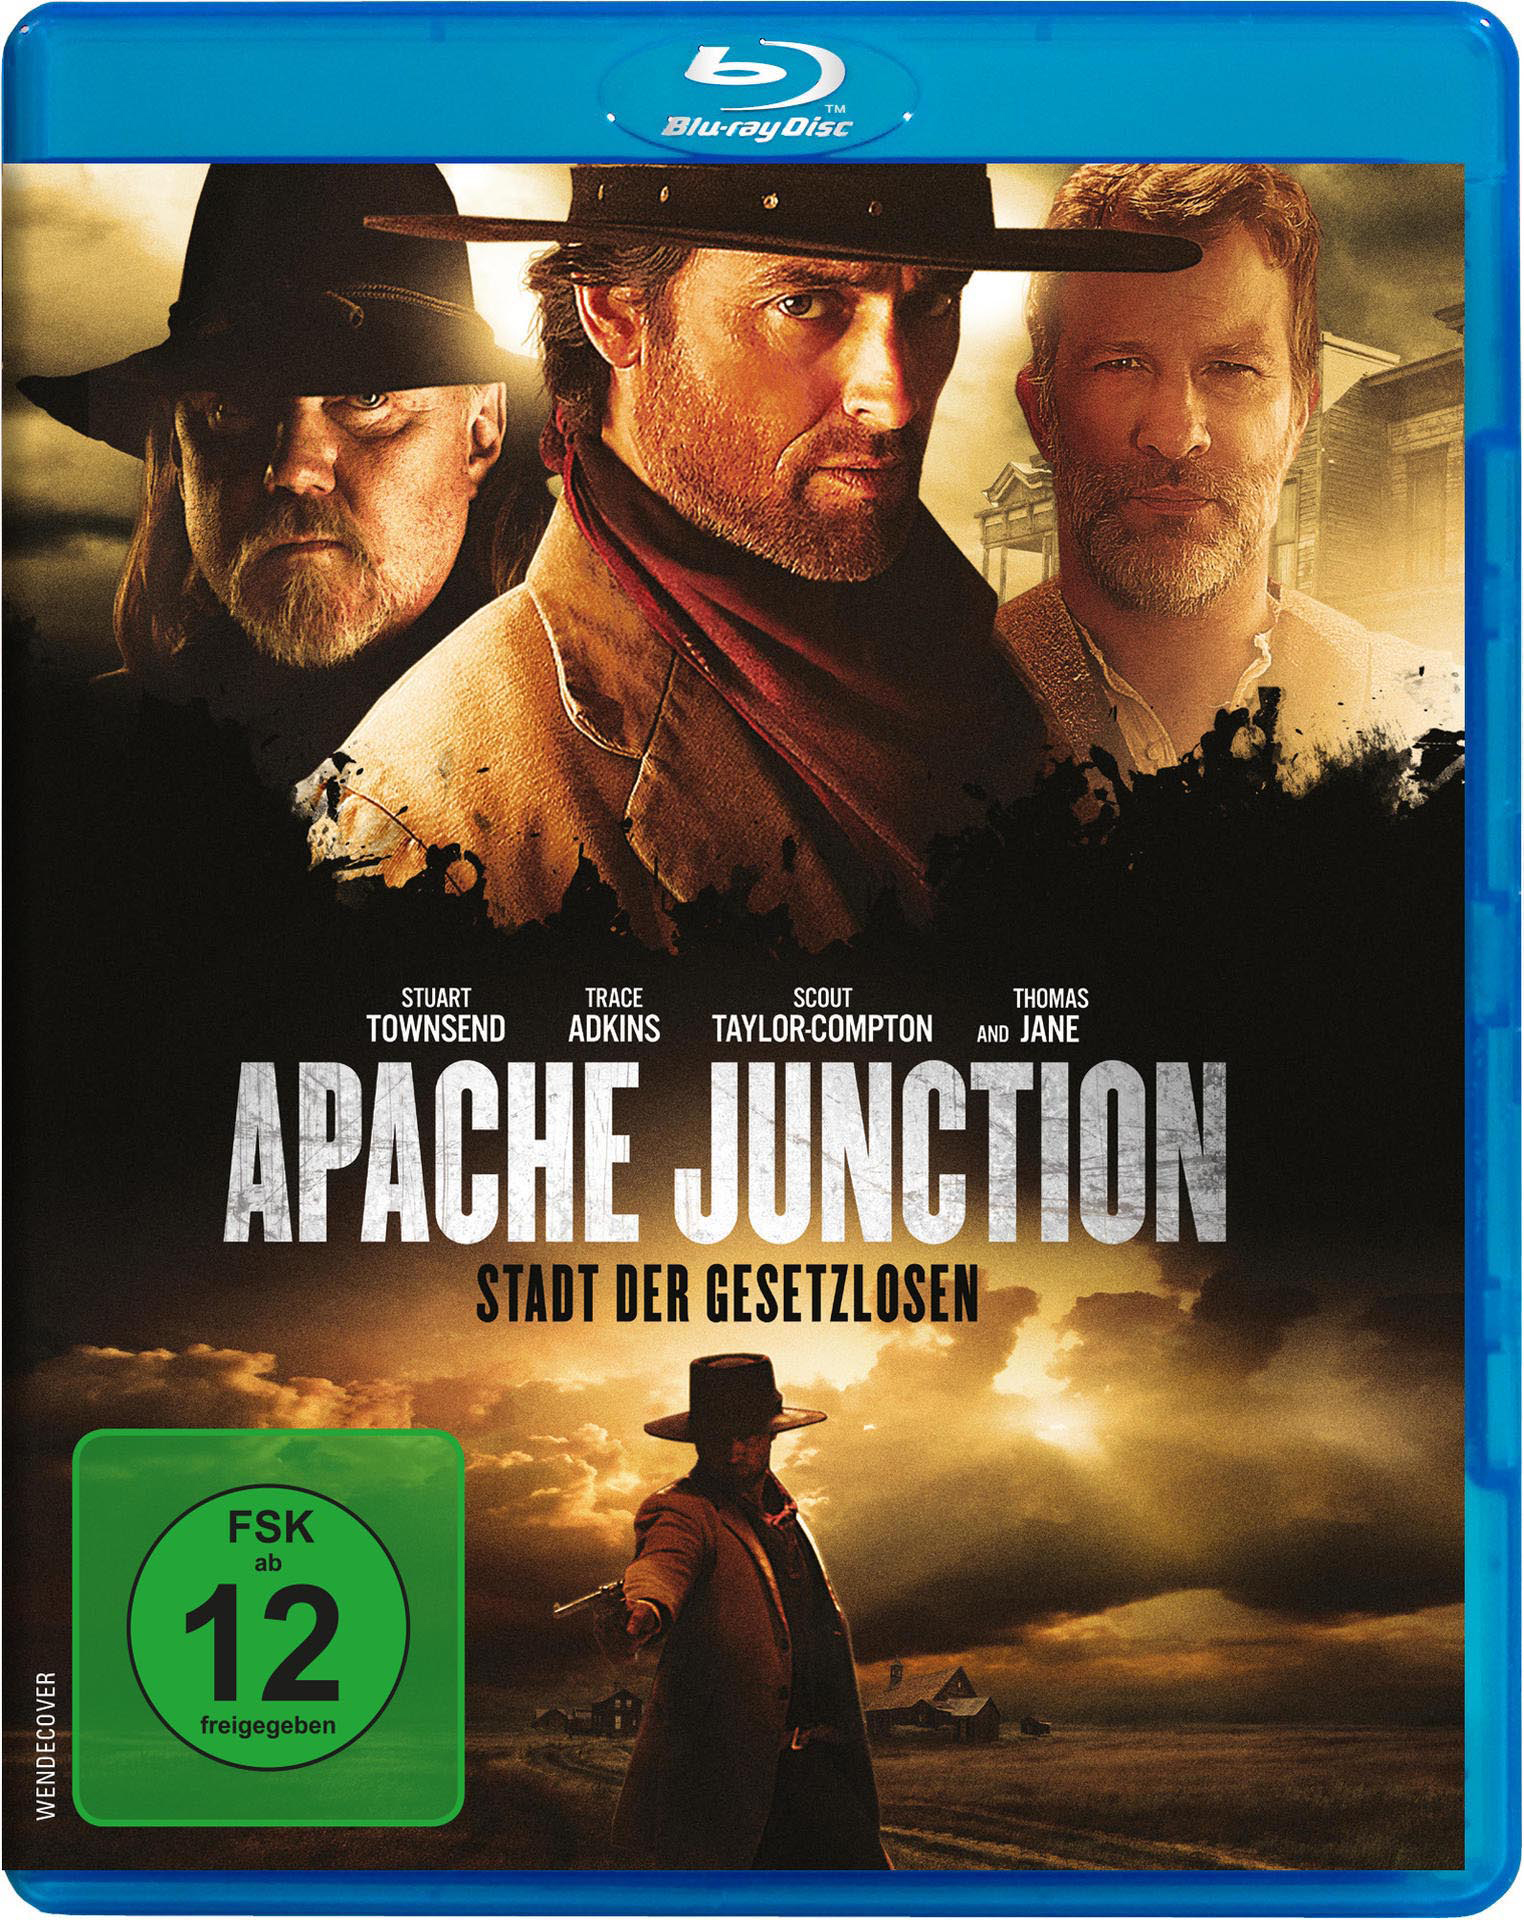 Apache Junction - Stadt der Blu-ray Gesetzlosen